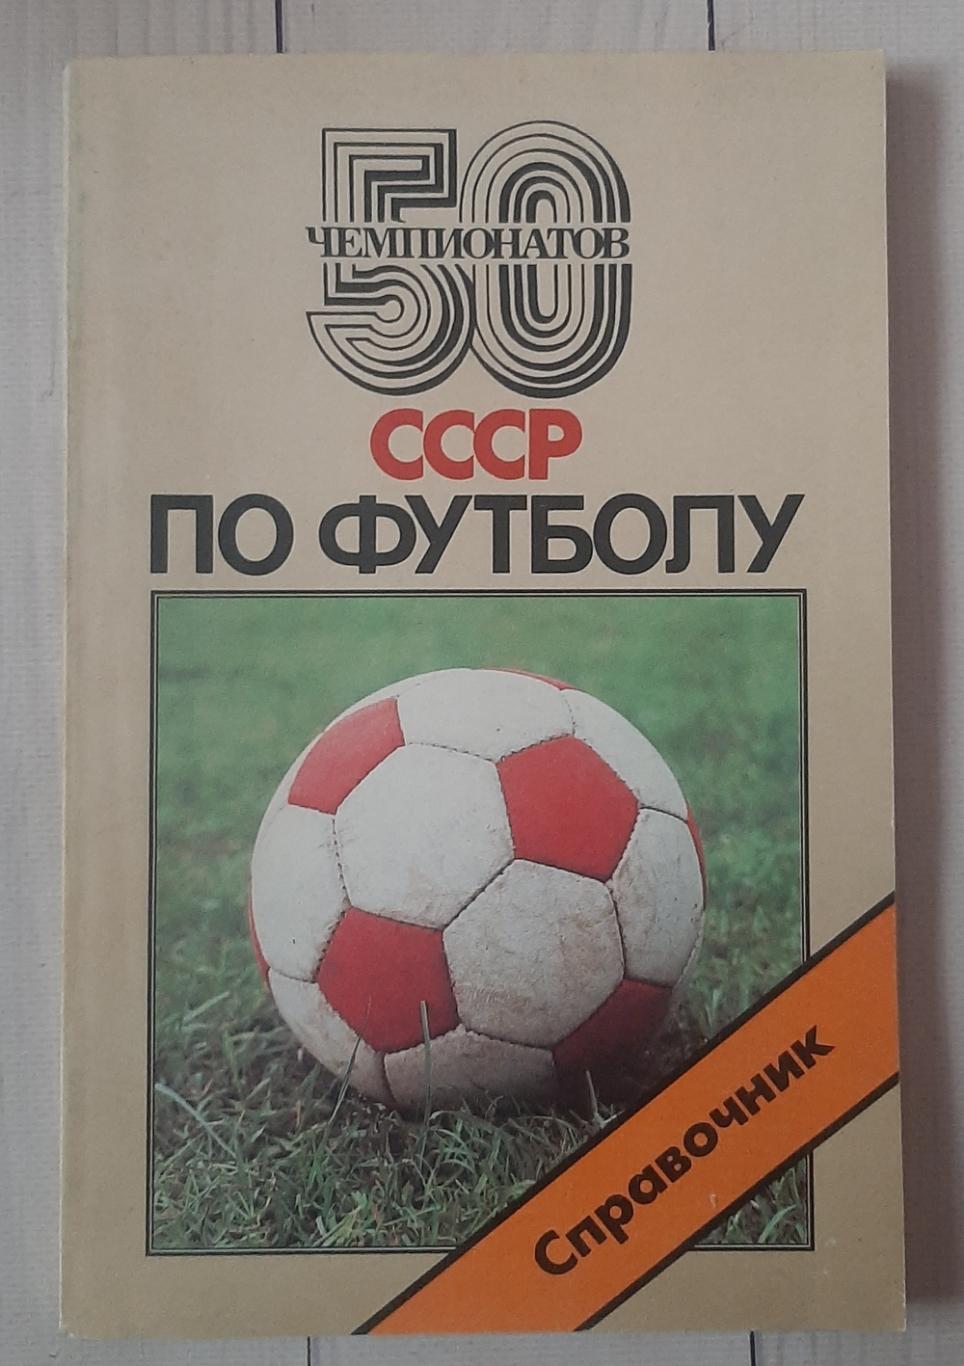 50 Чемпионатов СССР по футболу